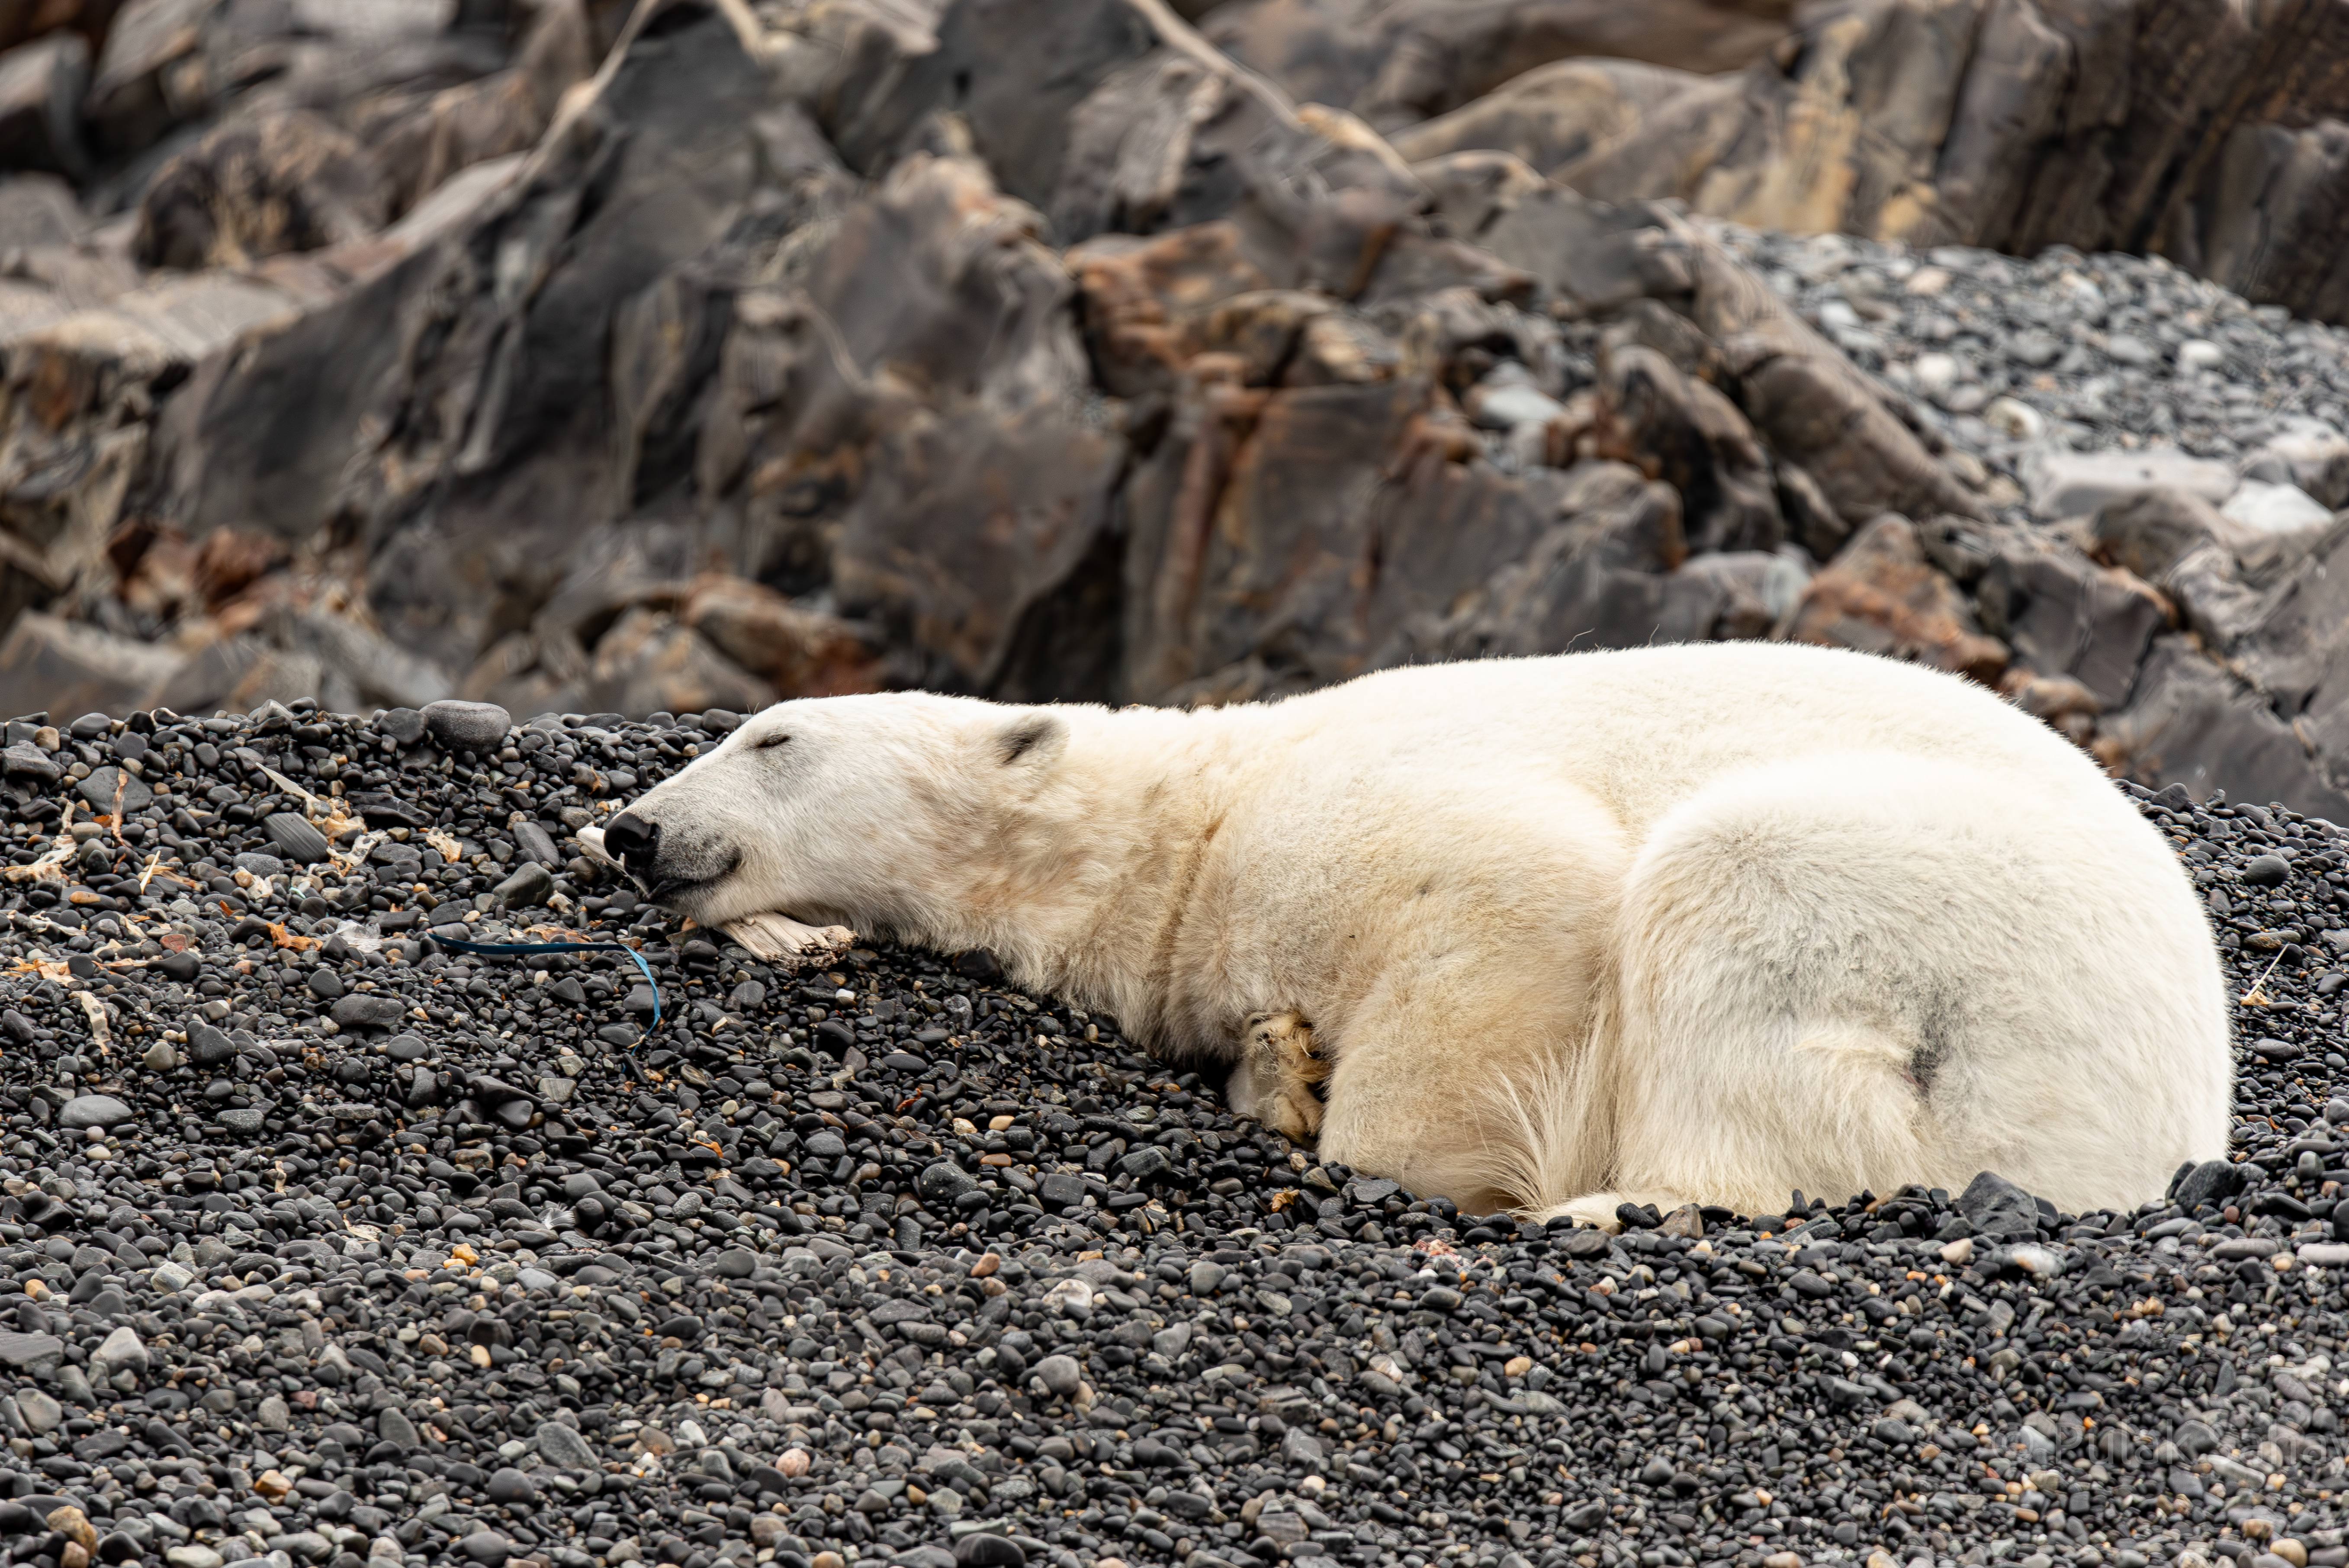 Polar bear using wooden plank as pillow